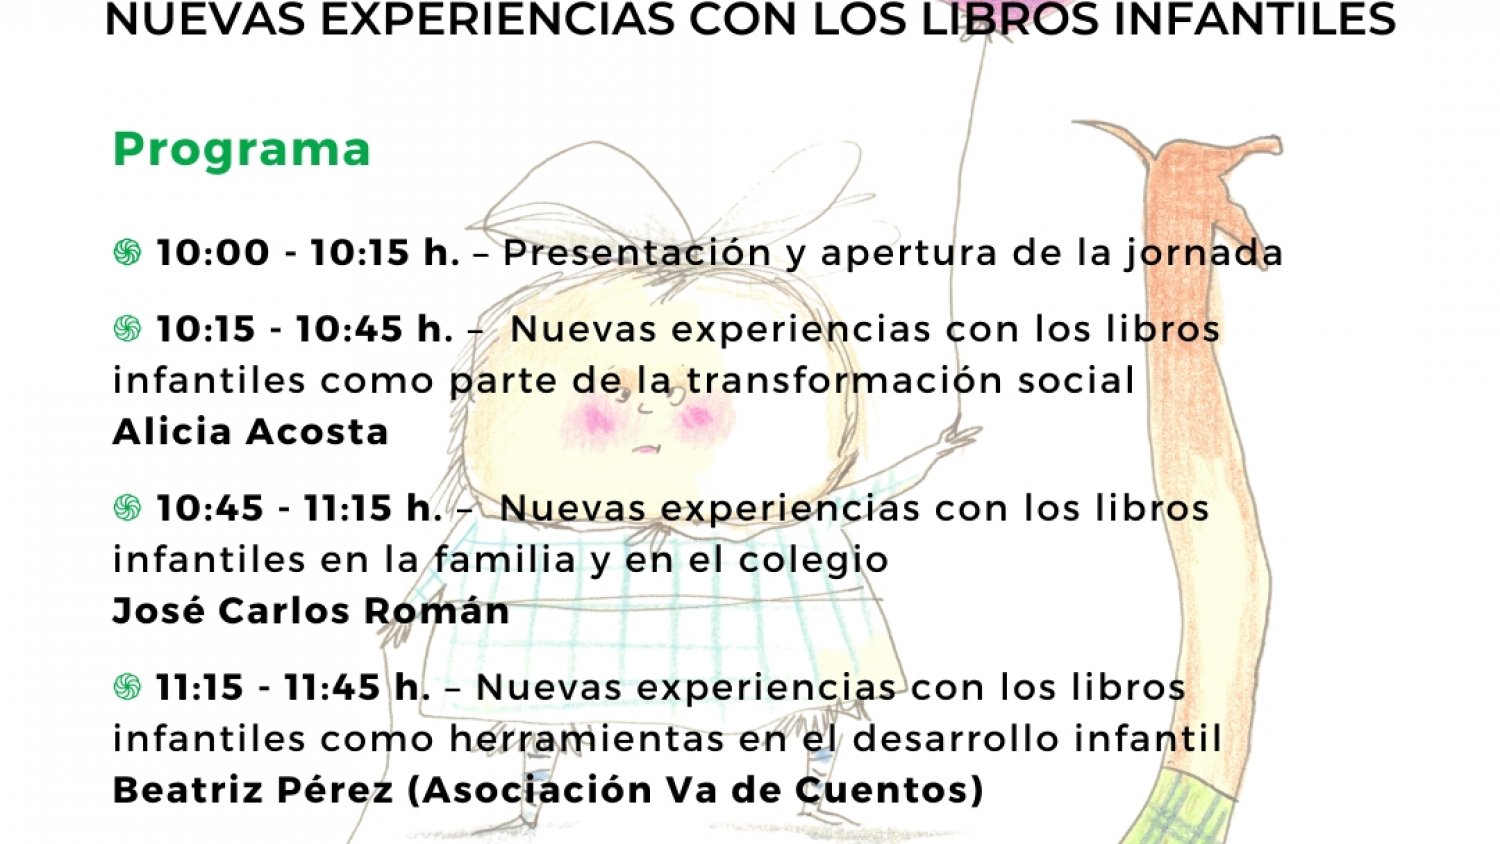 La fundación Rafael Pérez Estrada celebra una jornada virtual sobre nuevas experiencias libros infantiles